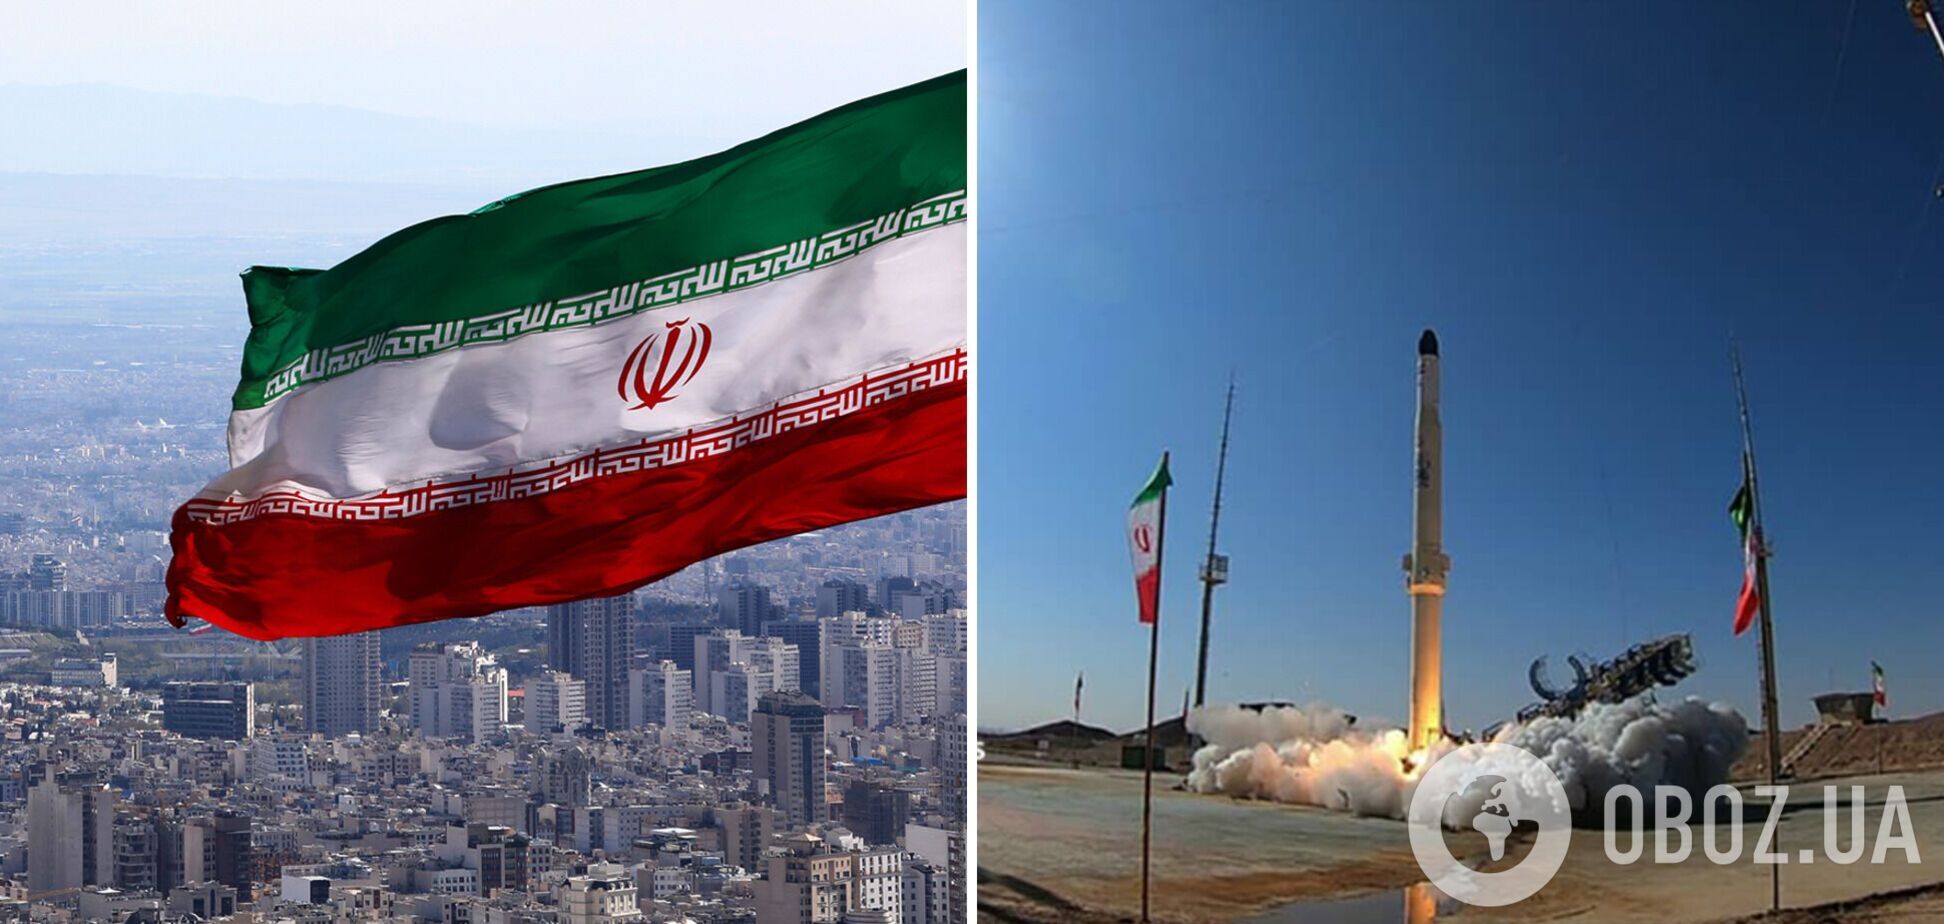 Іран повідомив про запуск ракети в космос: у чому загроза